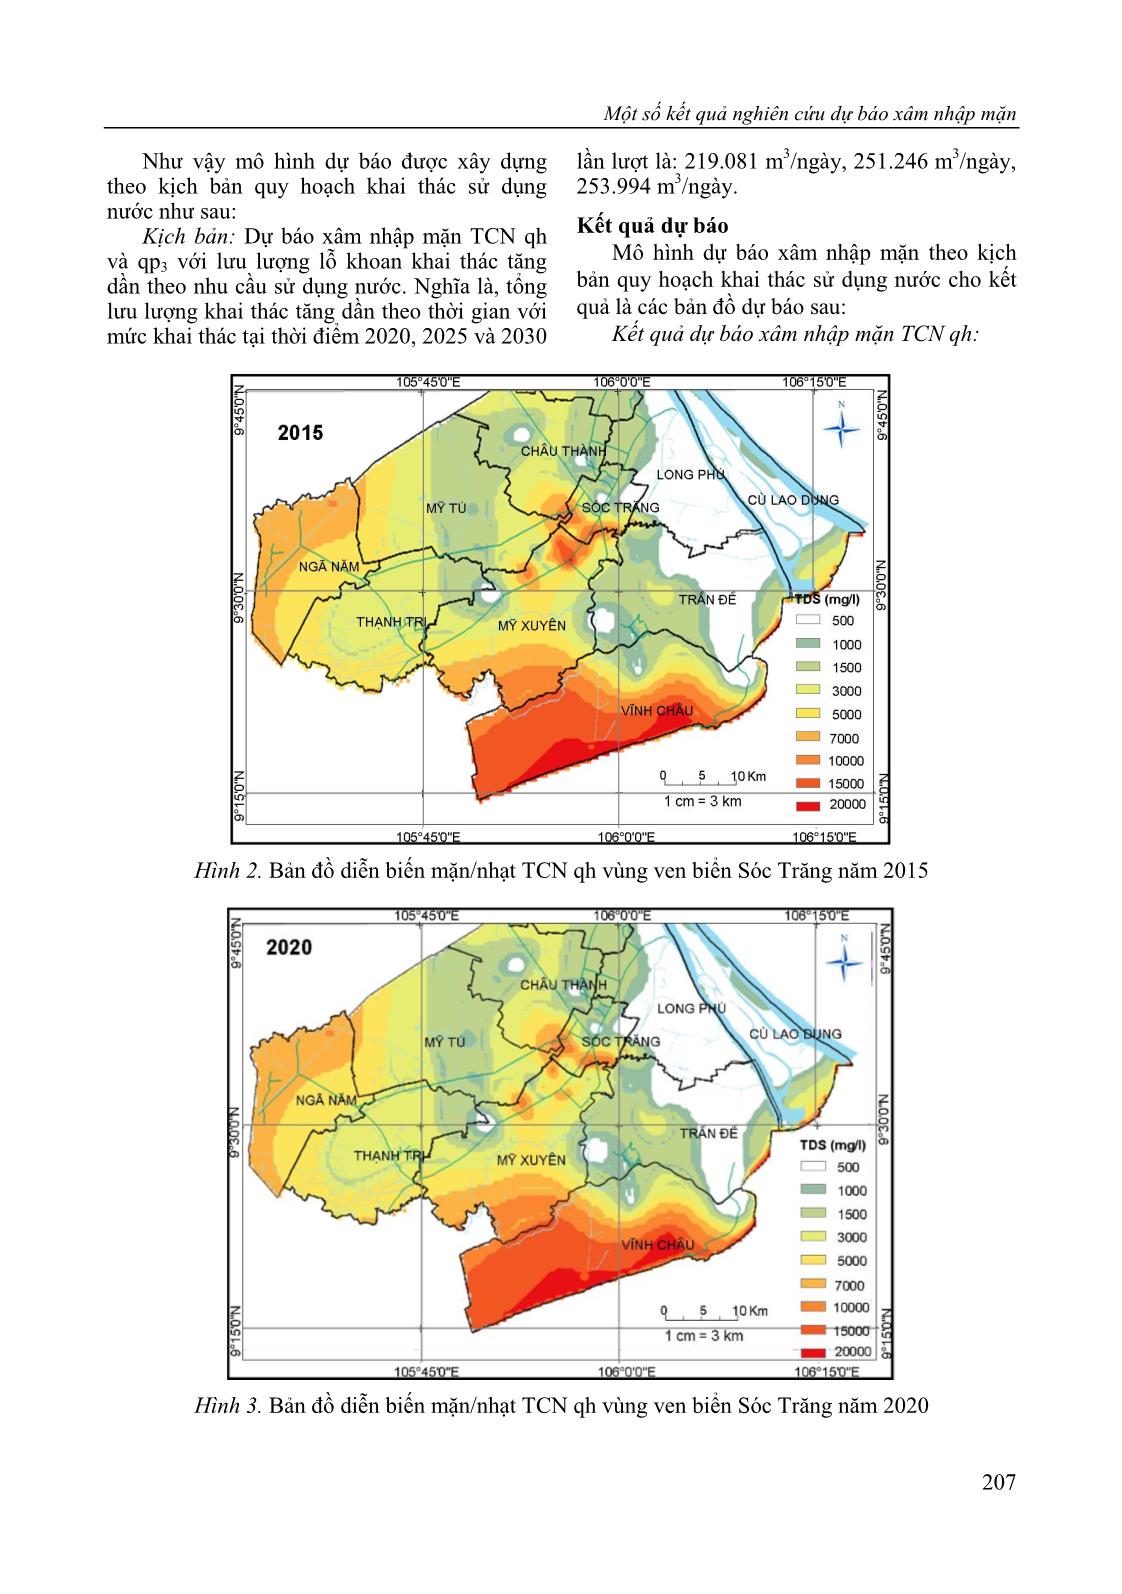 Một số kết quả nghiên cứu dự báo xâm nhập mặn nước dưới đất vùng ven biển tỉnh Sóc Trăng trang 5